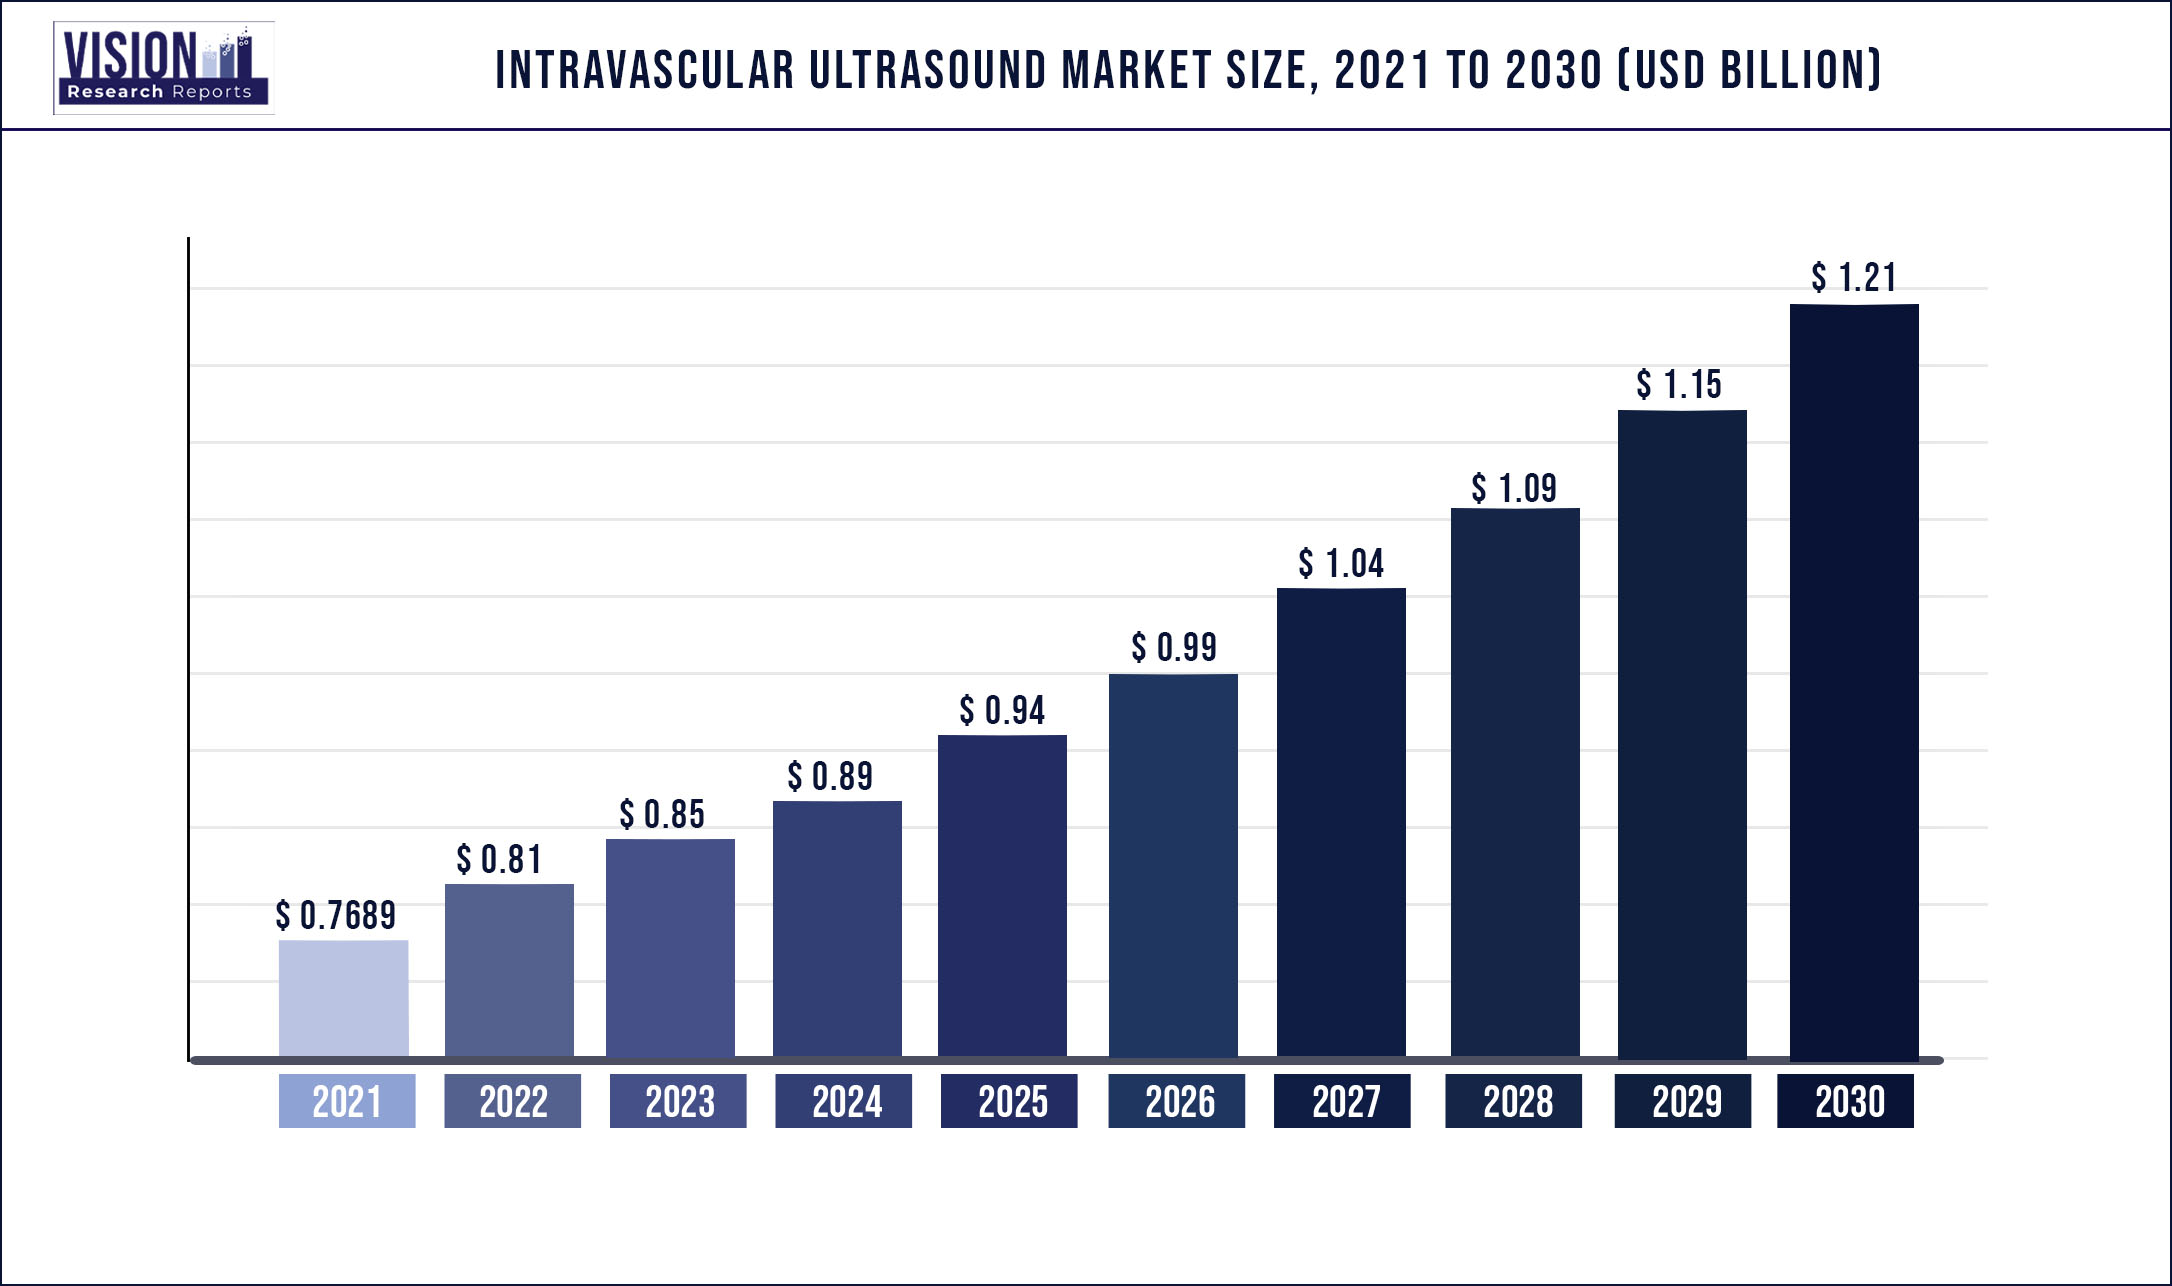 Intravascular Ultrasound Market Size 2021 to 2030